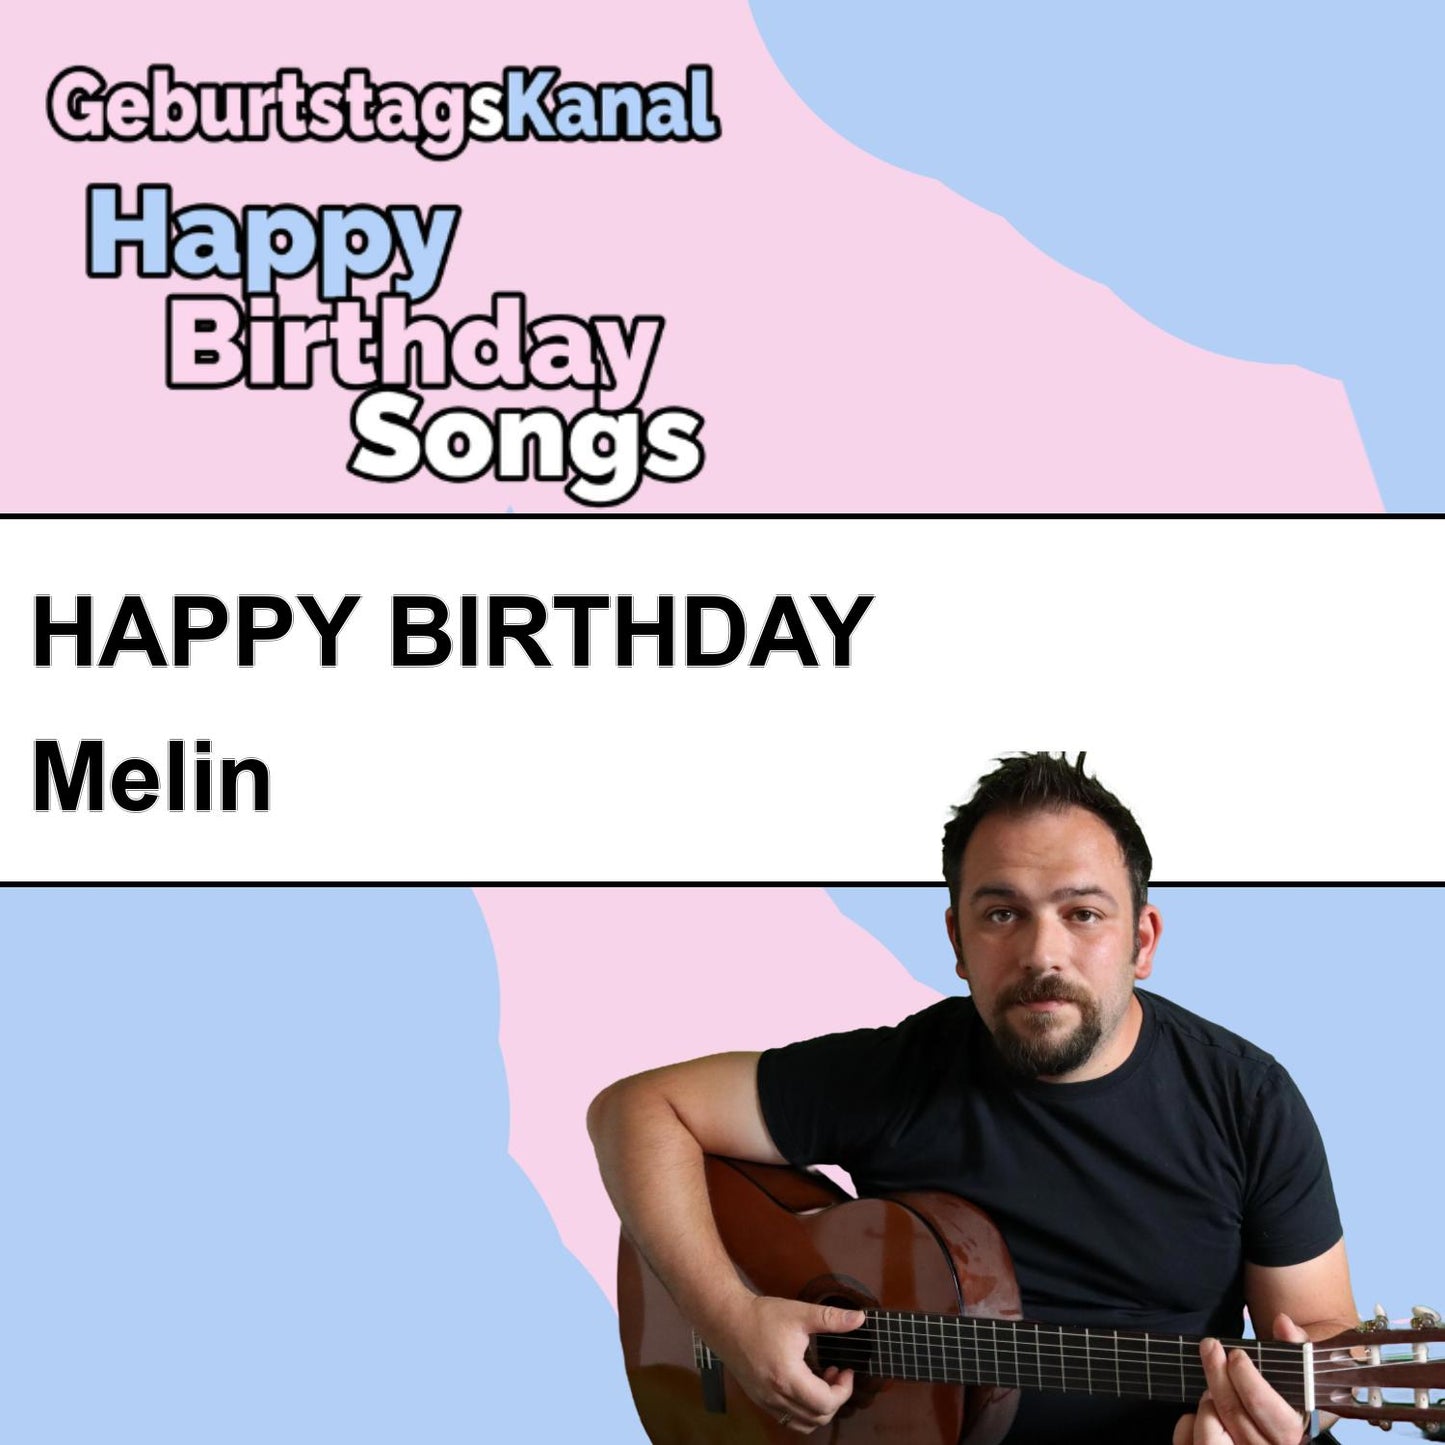 Produktbild Happy Birthday to you Melin mit Wunschgrußbotschaft